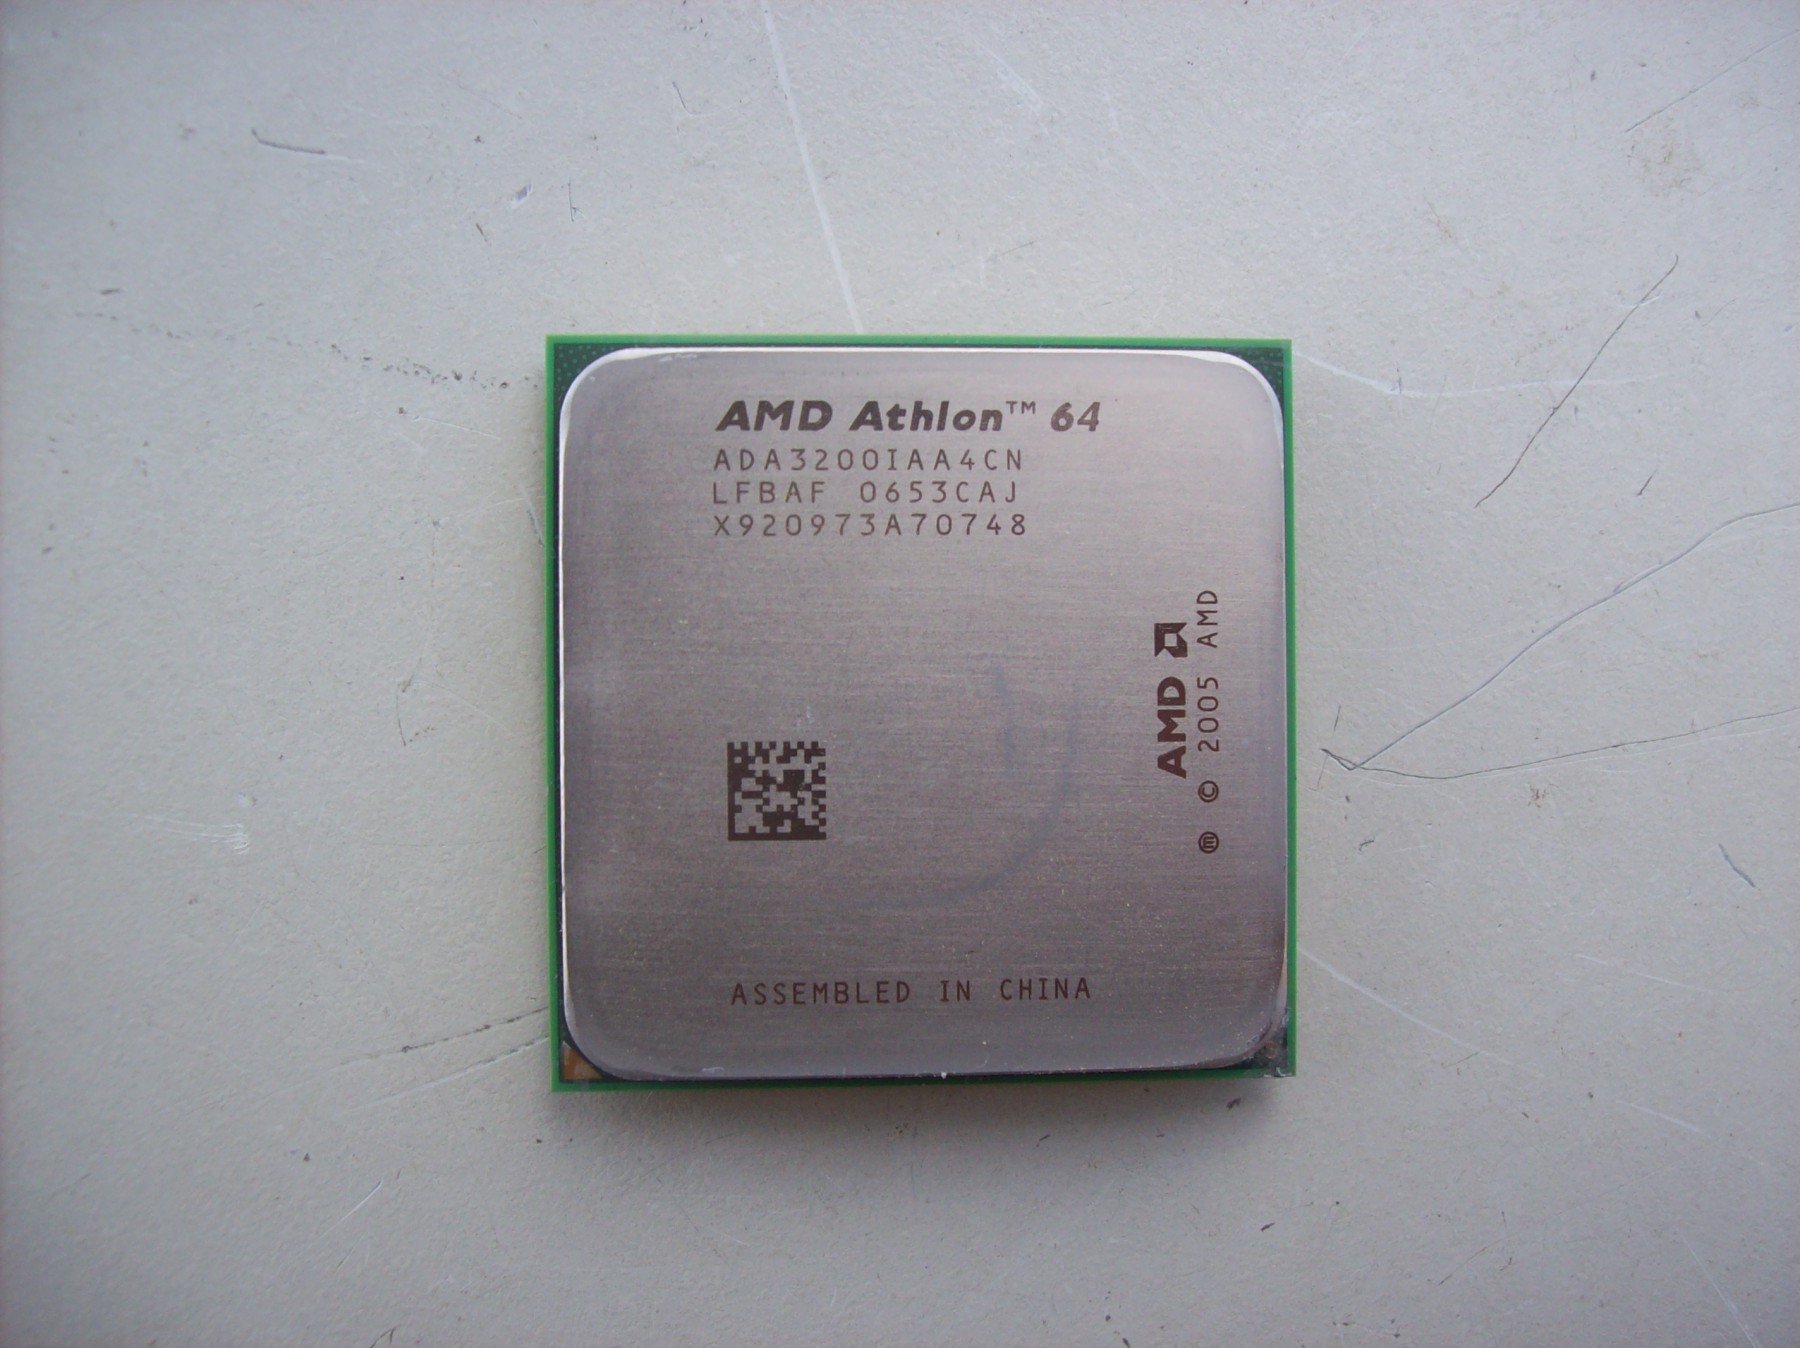 Athlon 650. AMD Athlon 64 2001 года. Атлон 64 2003 года. ООО Атлон. АМД Атлон 64 ада 3200iaa4cn цена.